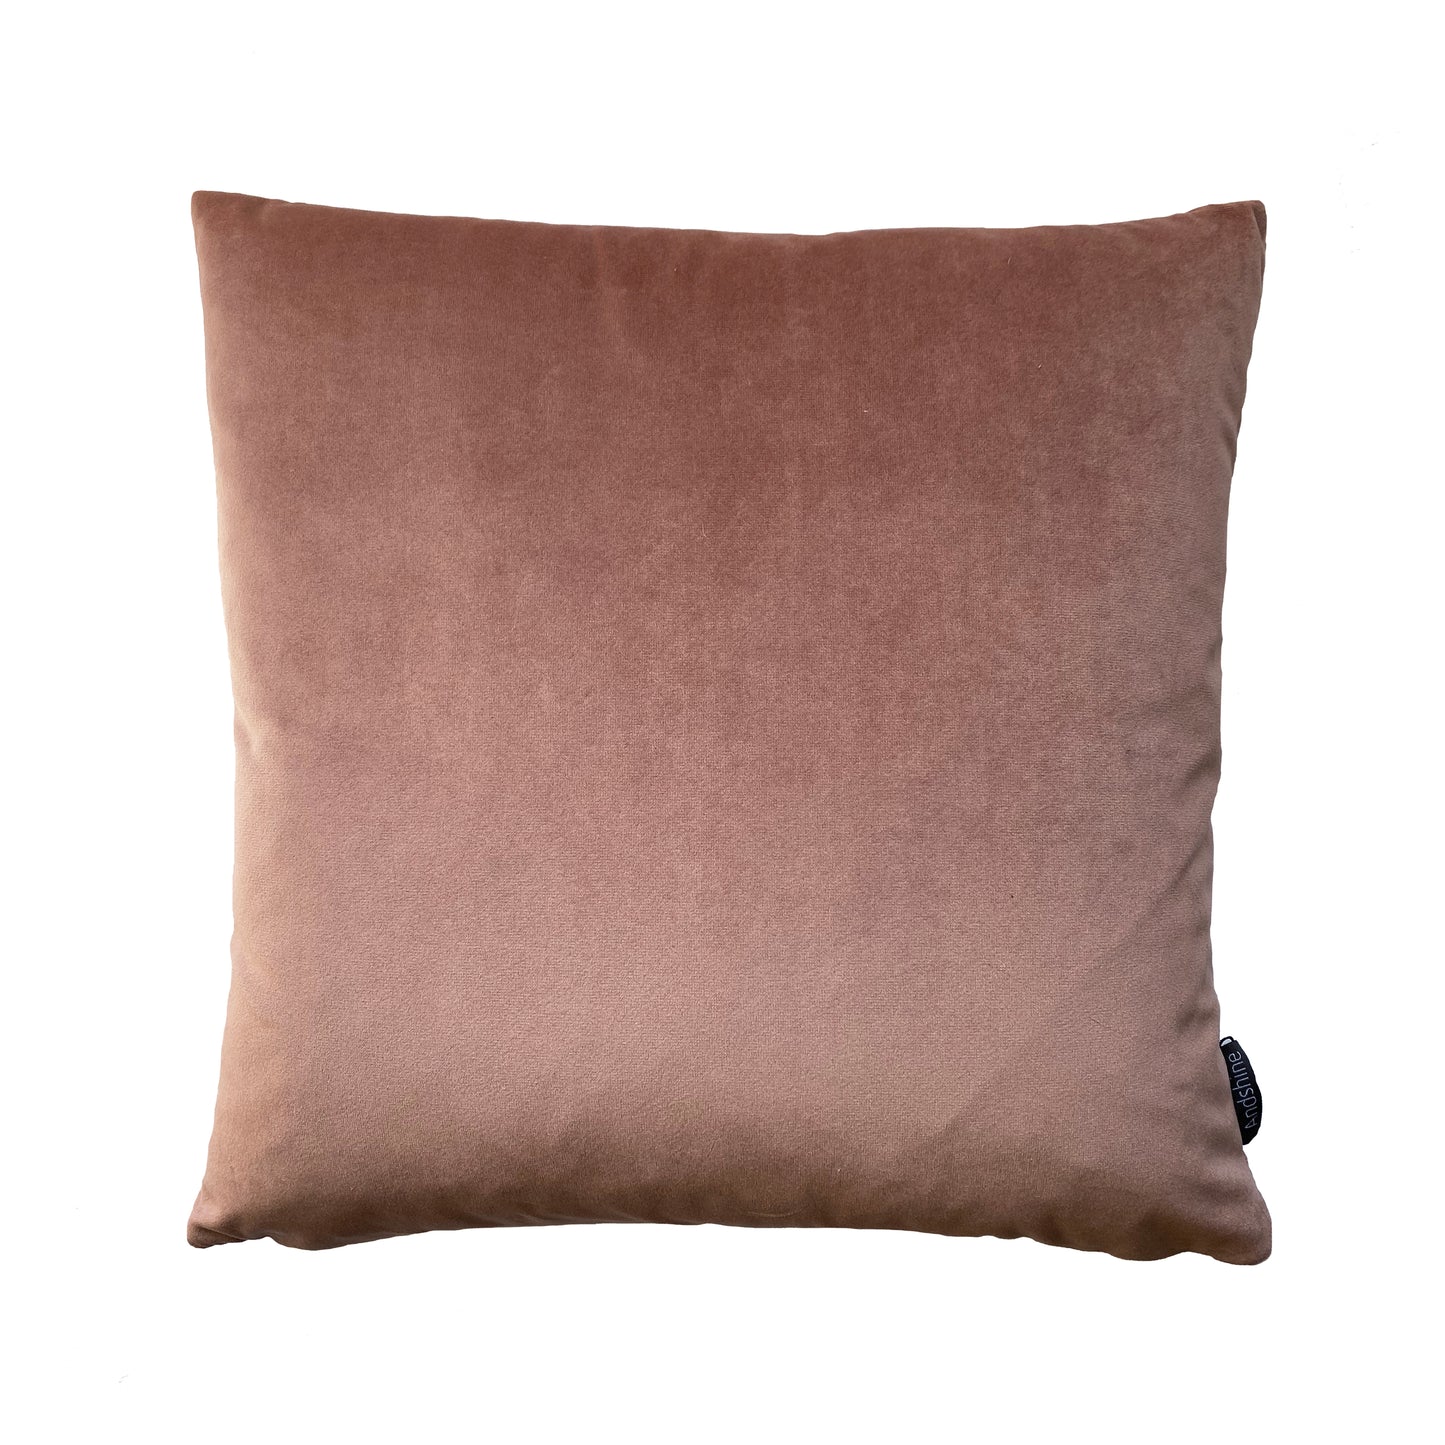 Velvet cushion - Old Rose